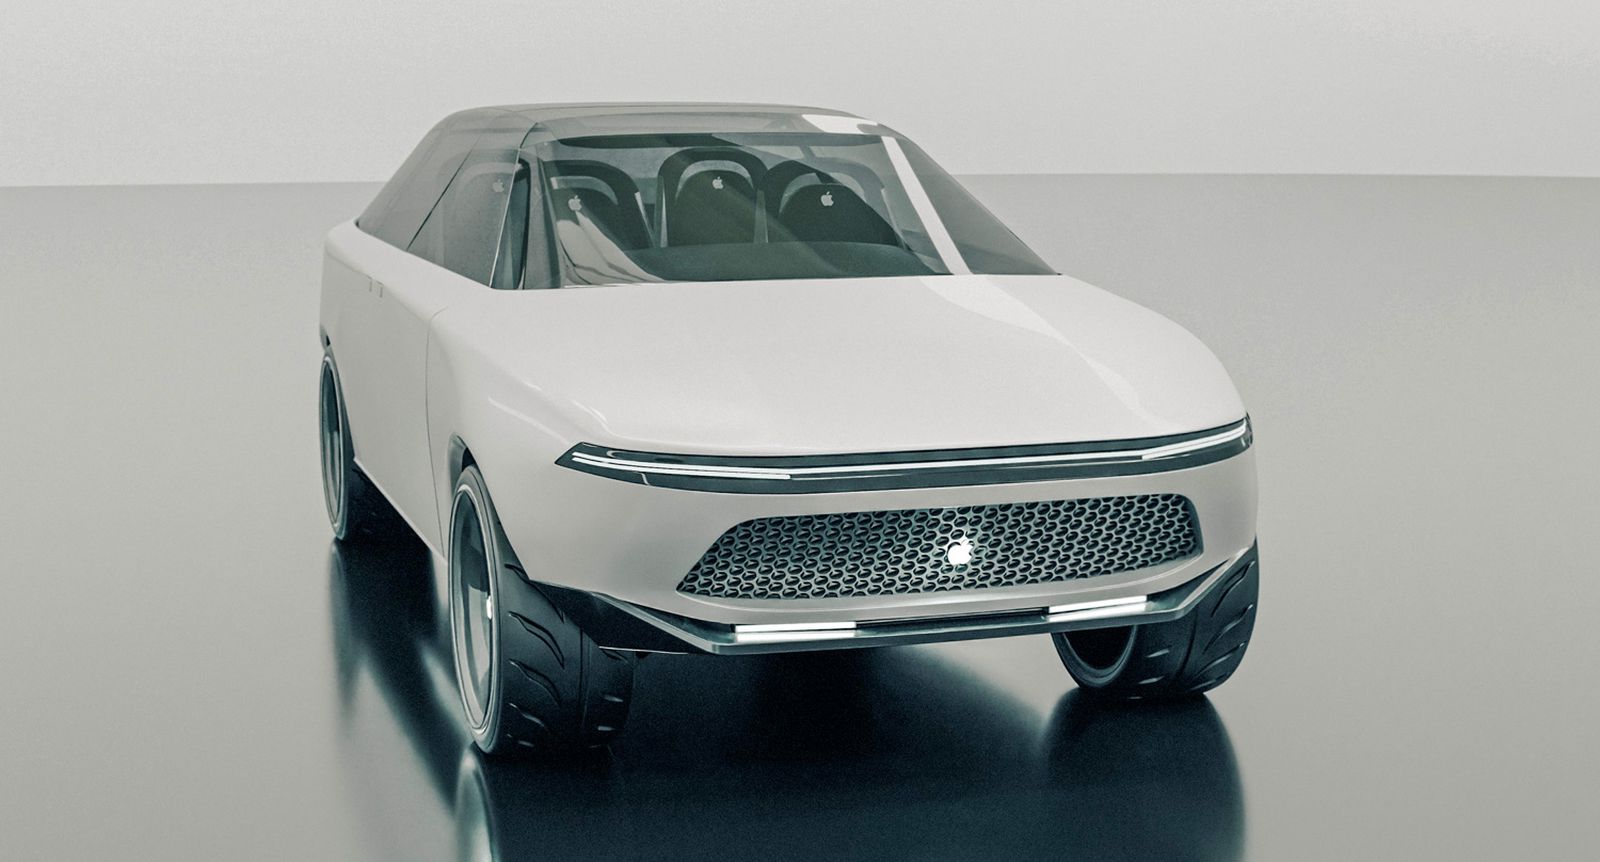 Британская компания по лизингу автомобилей создала 3D-рендер «Apple Car» на основе патентов